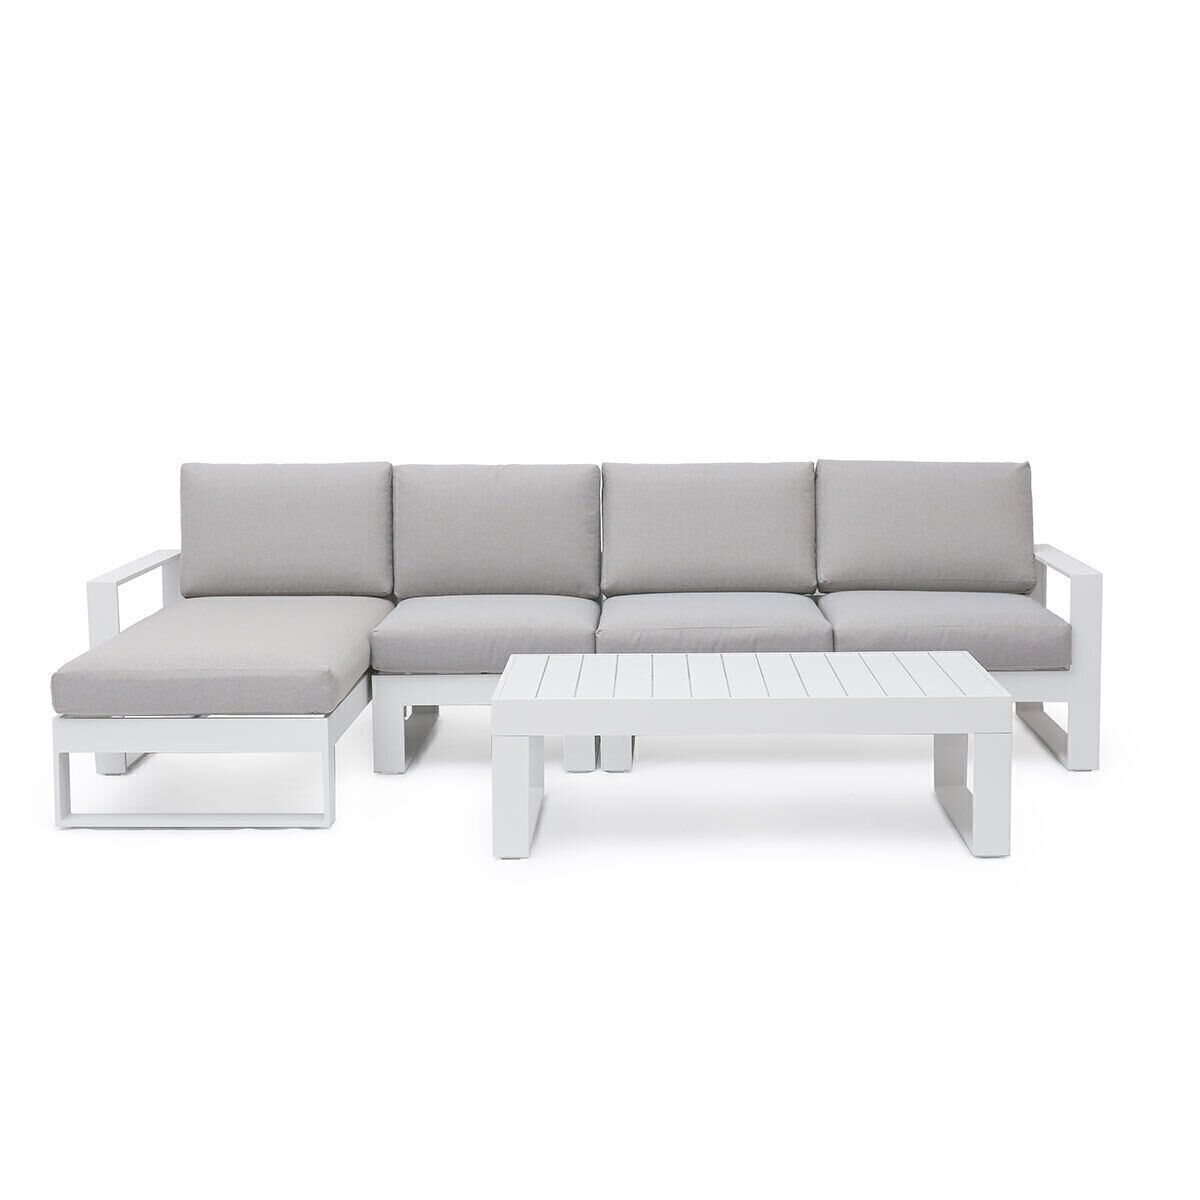 Maze - Amalfi Chaise Aluminium Sofa Set - White product image